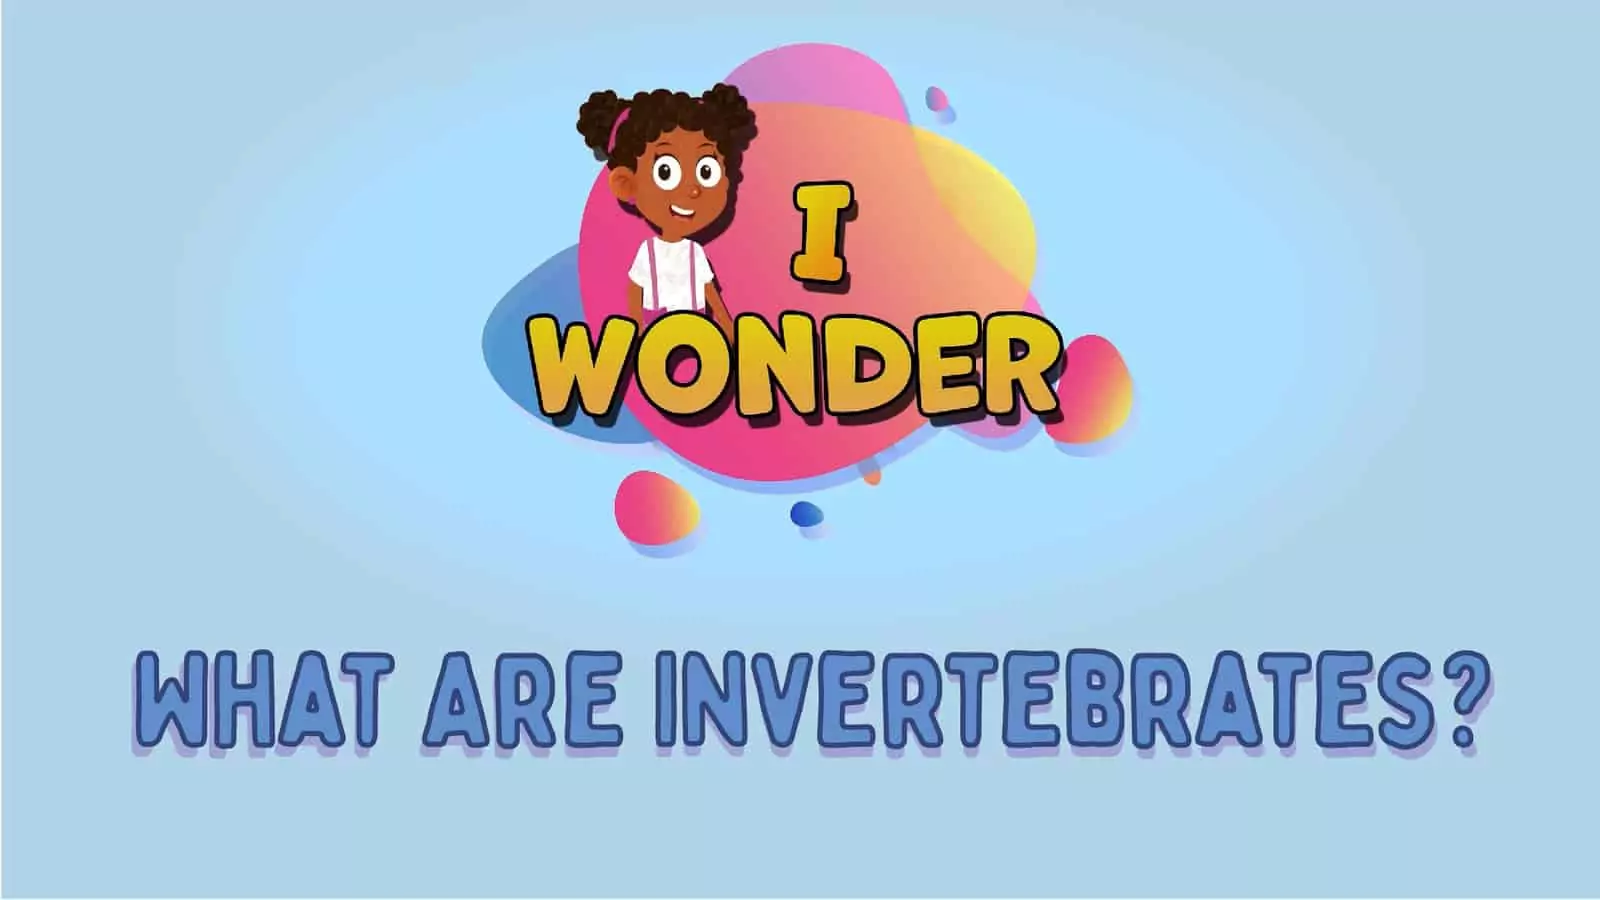 What Are Invertebrates?